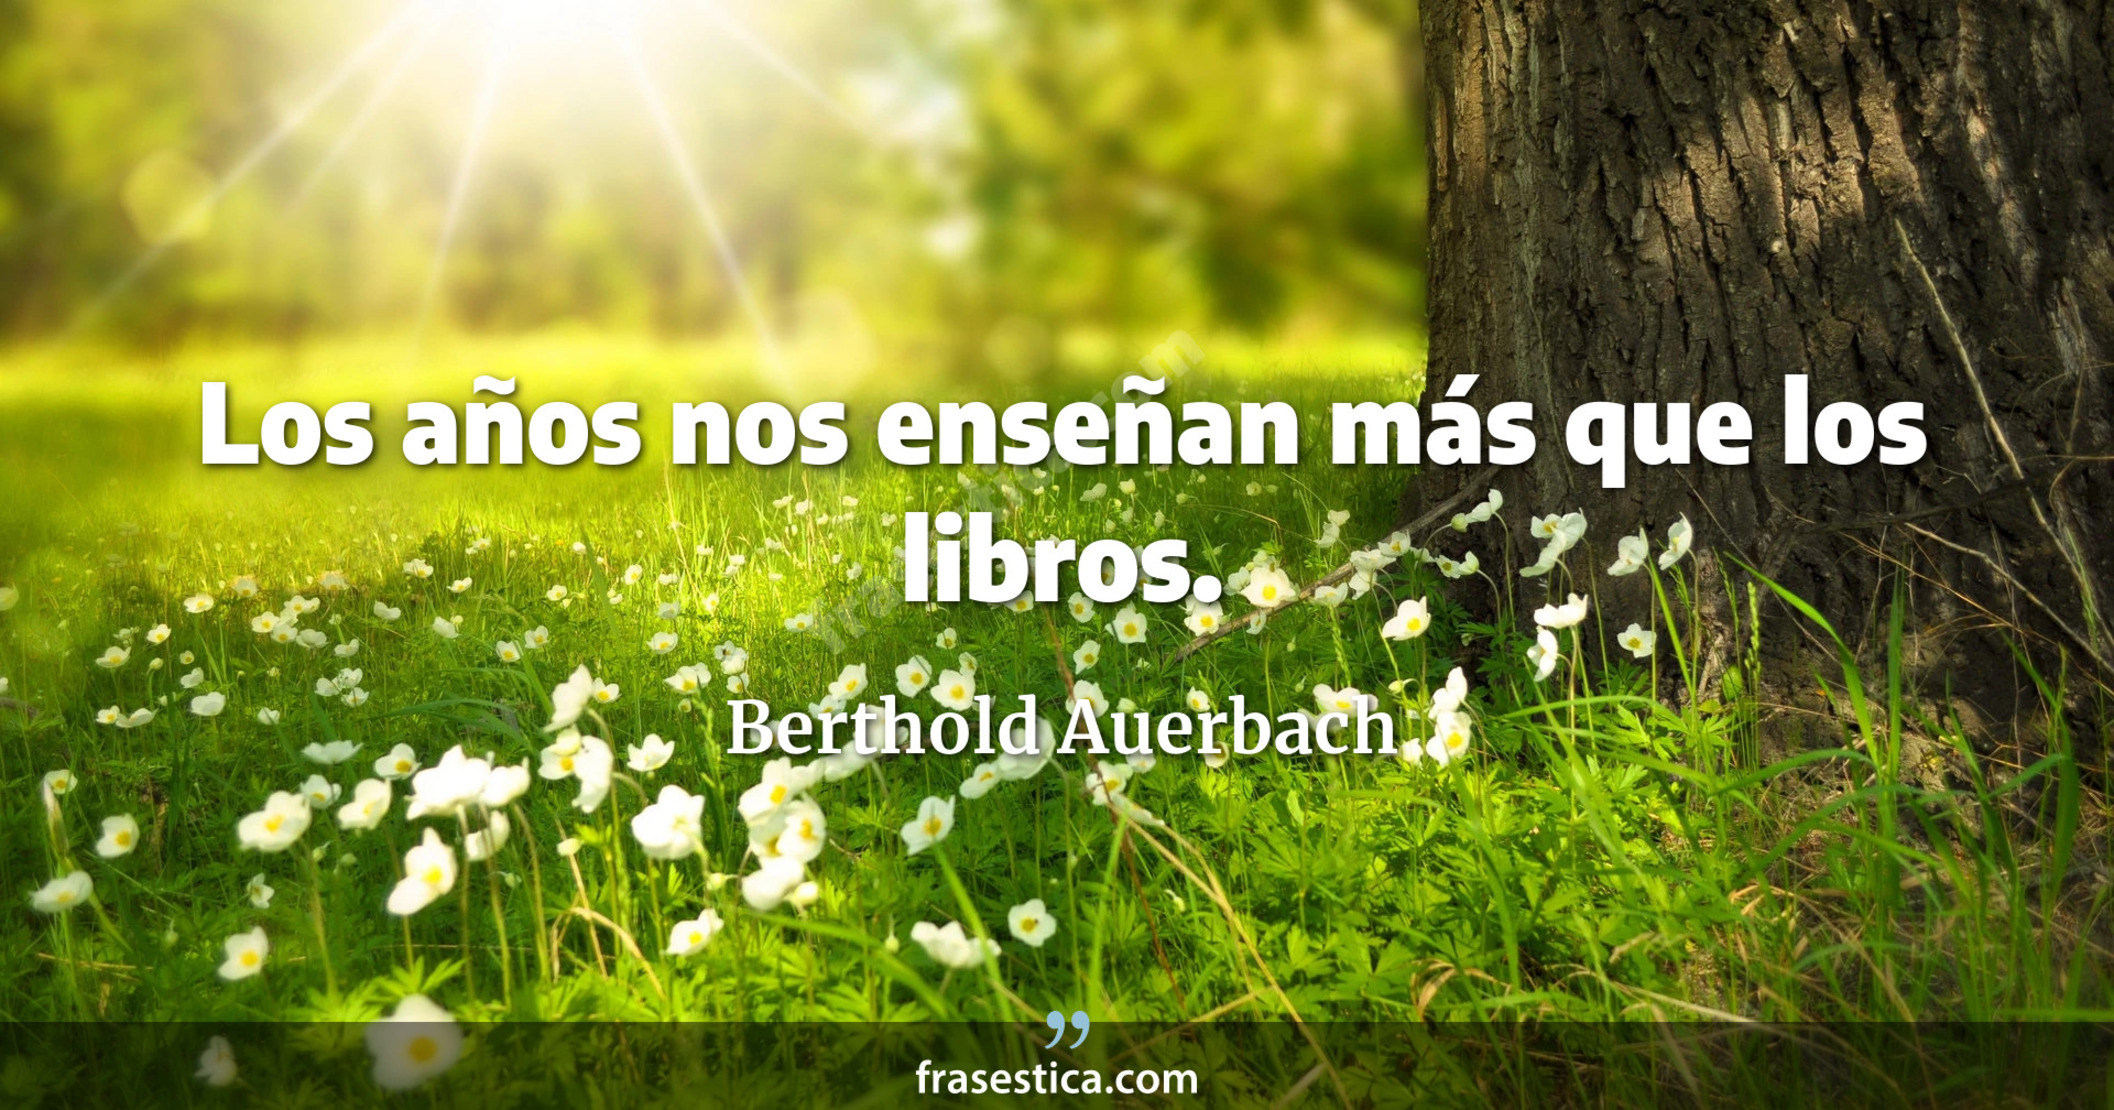 Los años nos enseñan más que los libros. - Berthold Auerbach